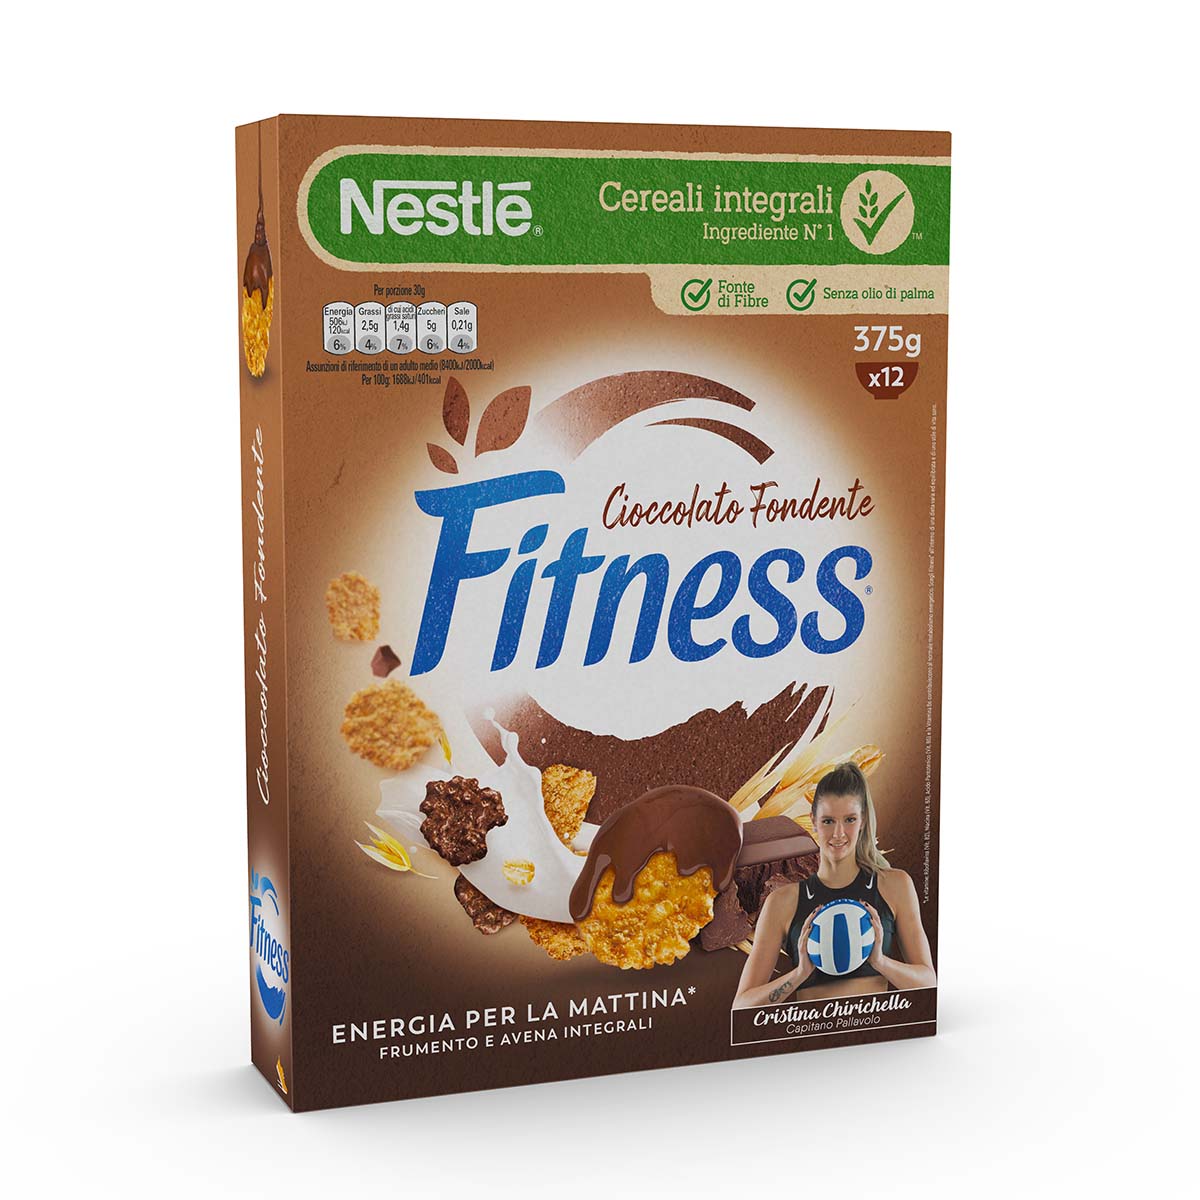 Fitness CIOCCOLATO FONDENTE Cereali con frumento e avena integrali e fiocchi ricoperti al cioccolato fondente 375g